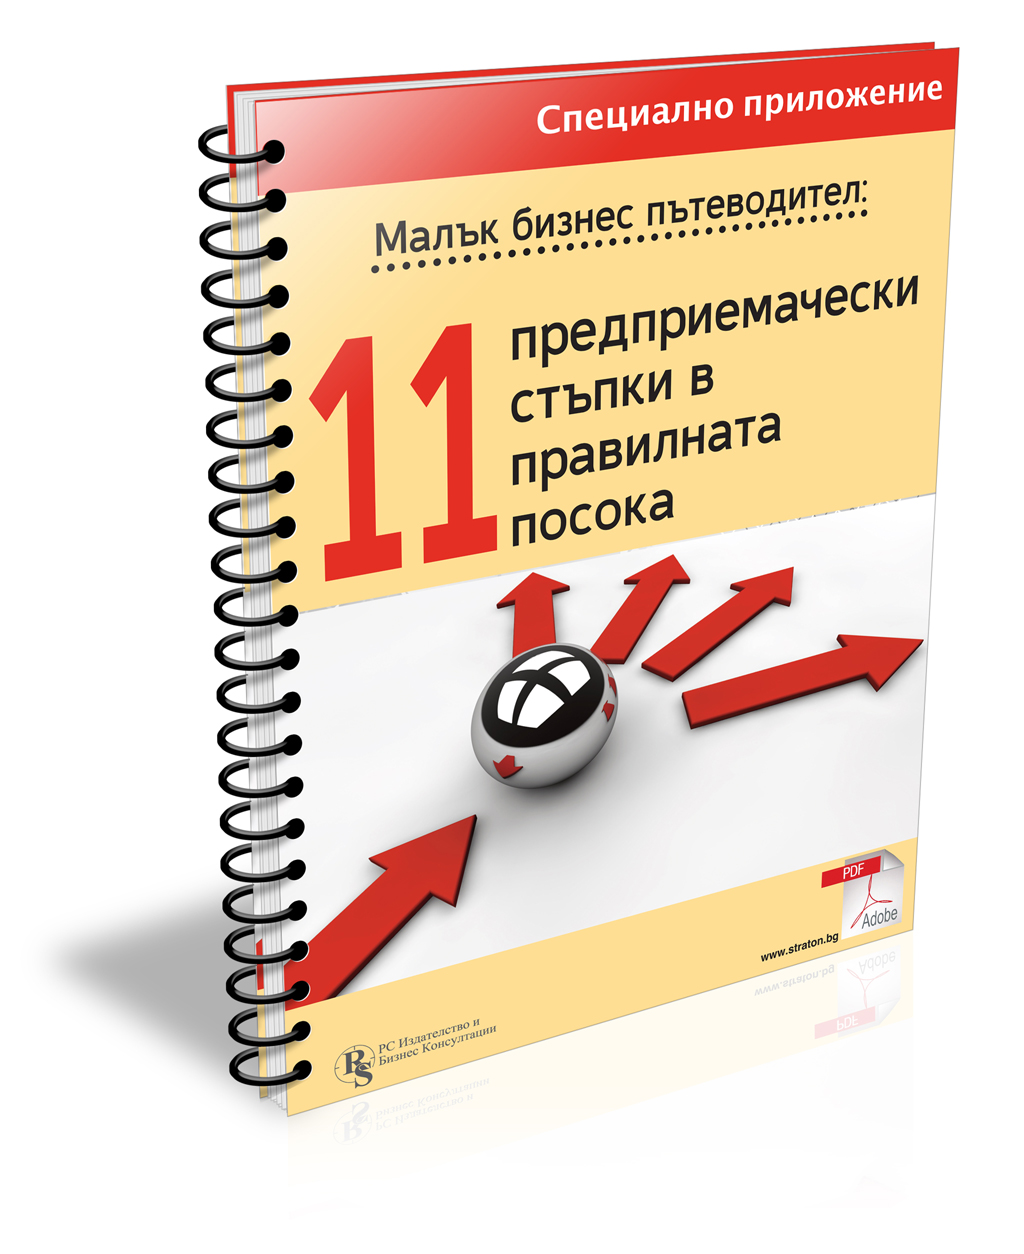 Малък бизнес пътеводител - 11 предприемачески стъпки в правилната посока